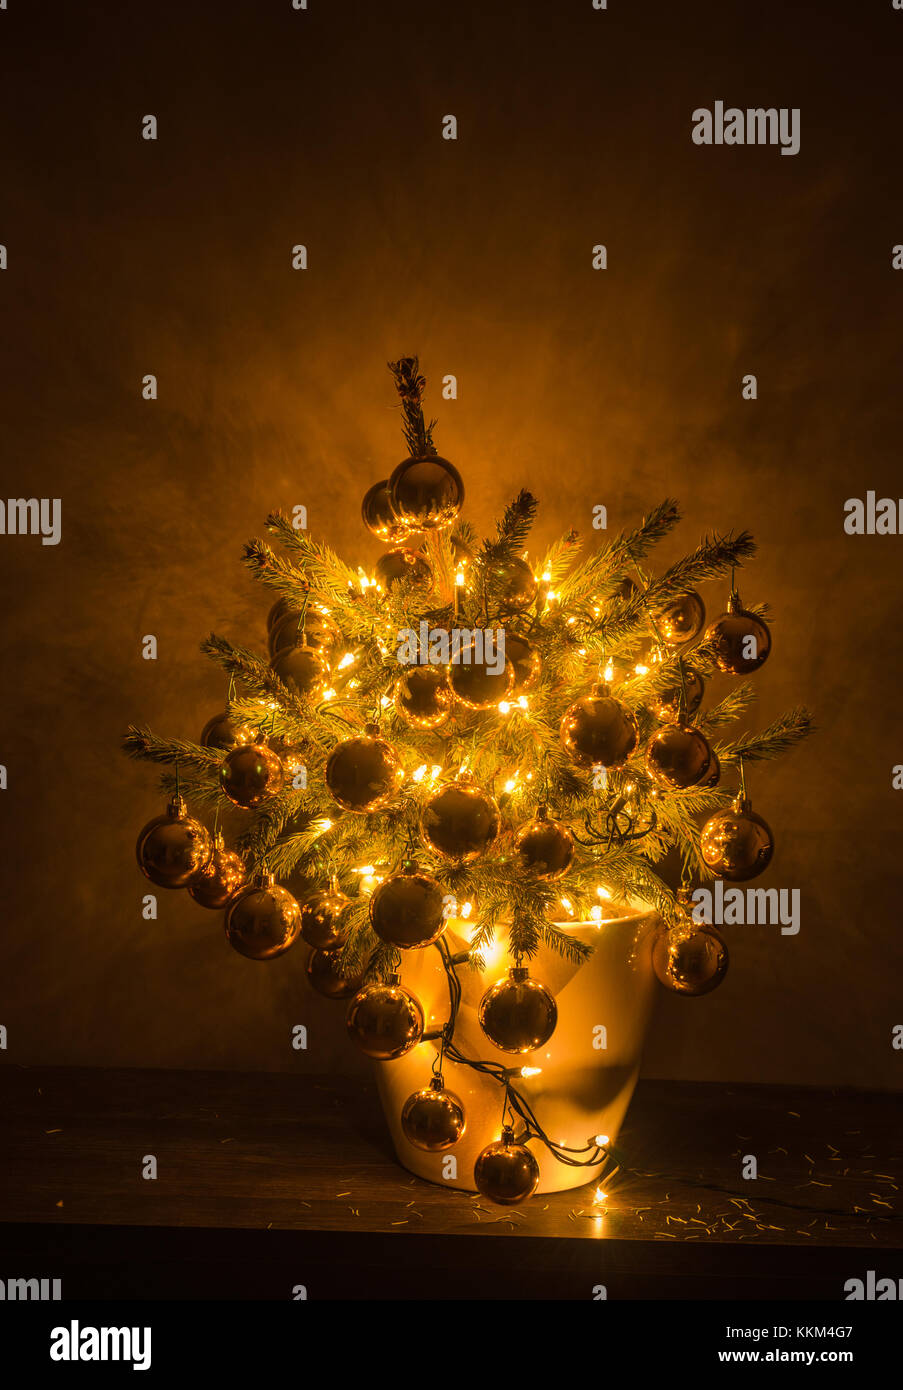 Petit arbre de Noël avec des lumières chaudes et babioles de luxe, dans un pot en plastique blanc, avec le fond sombre. Banque D'Images